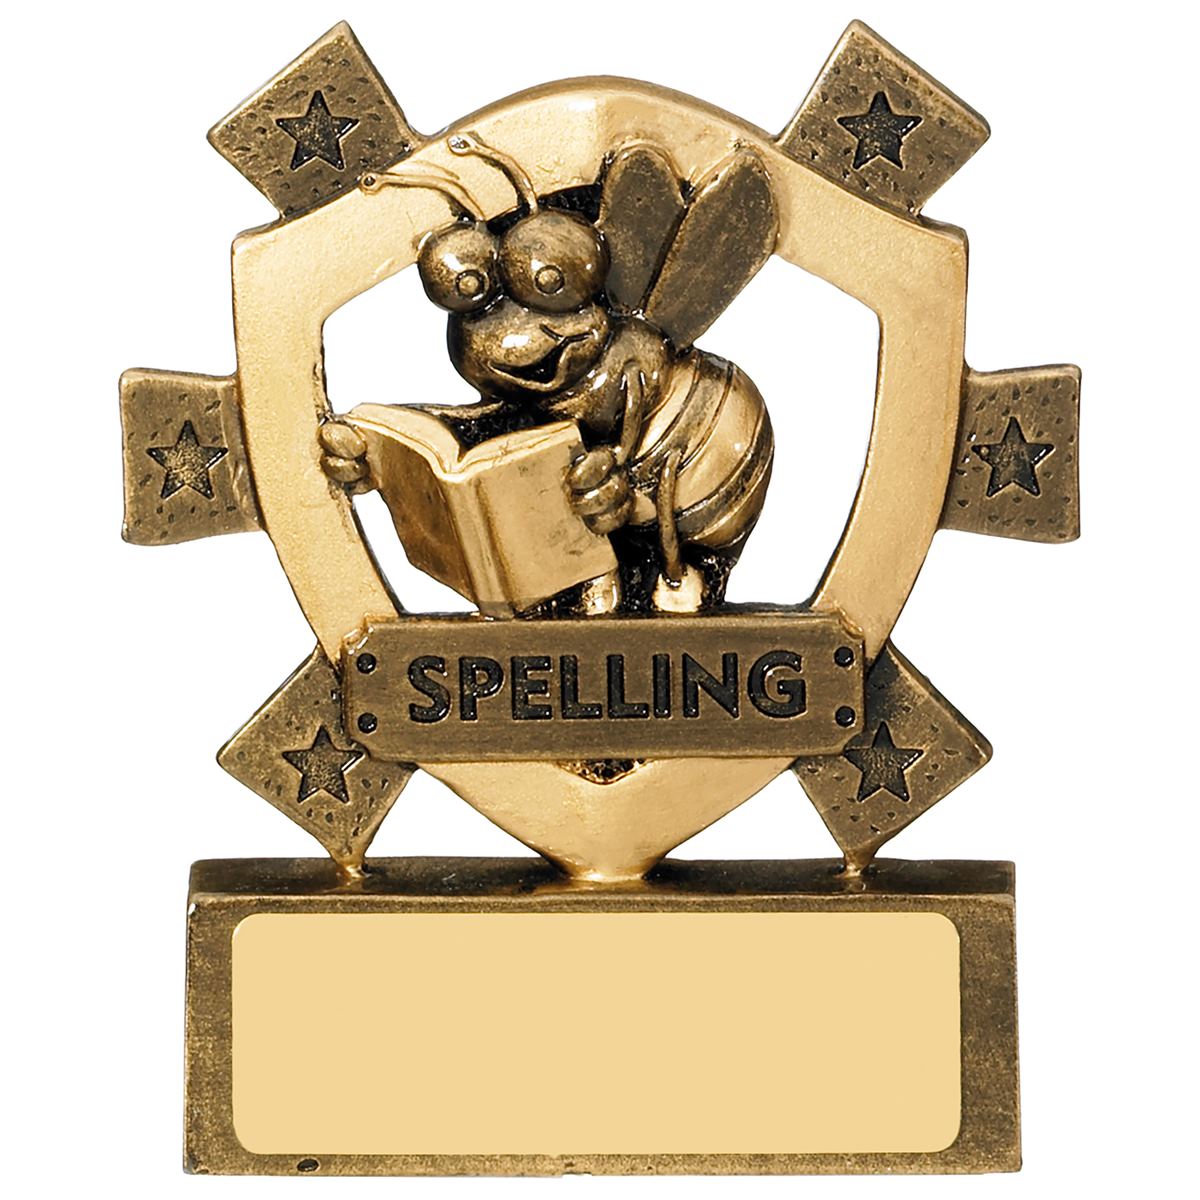 Spelling Mini Shield Trophy